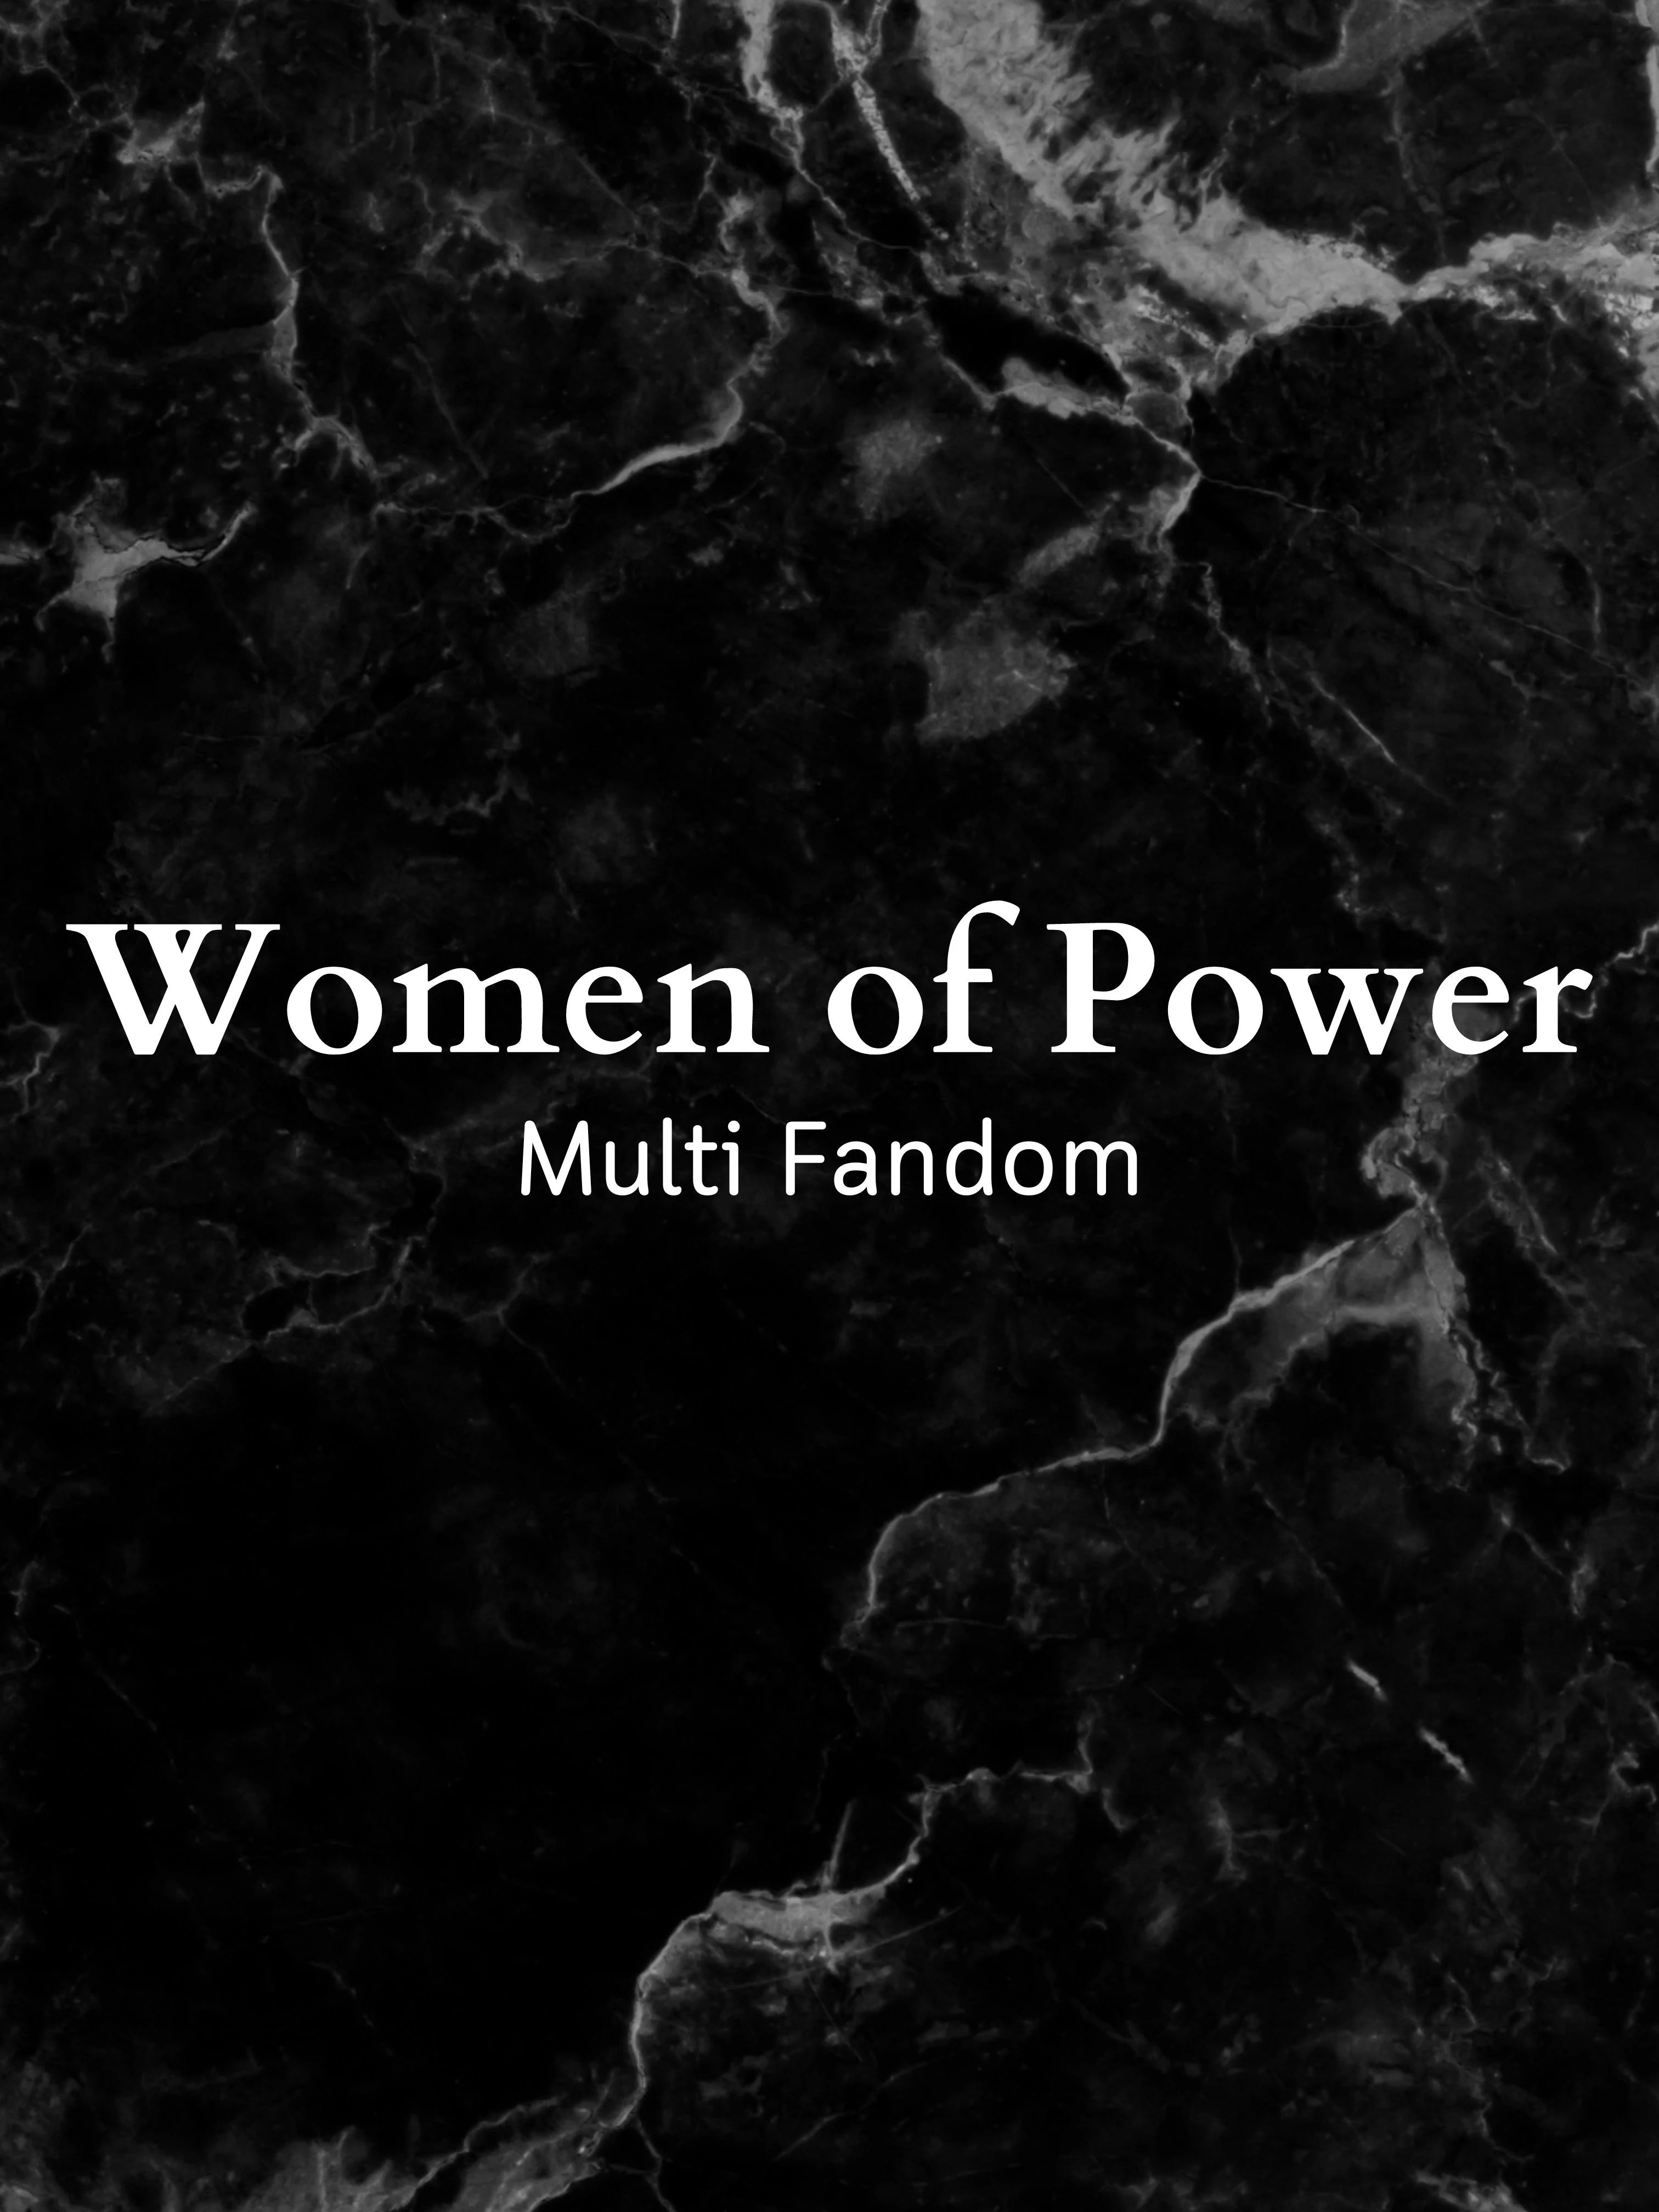 Women of Power series / Multi Fandom